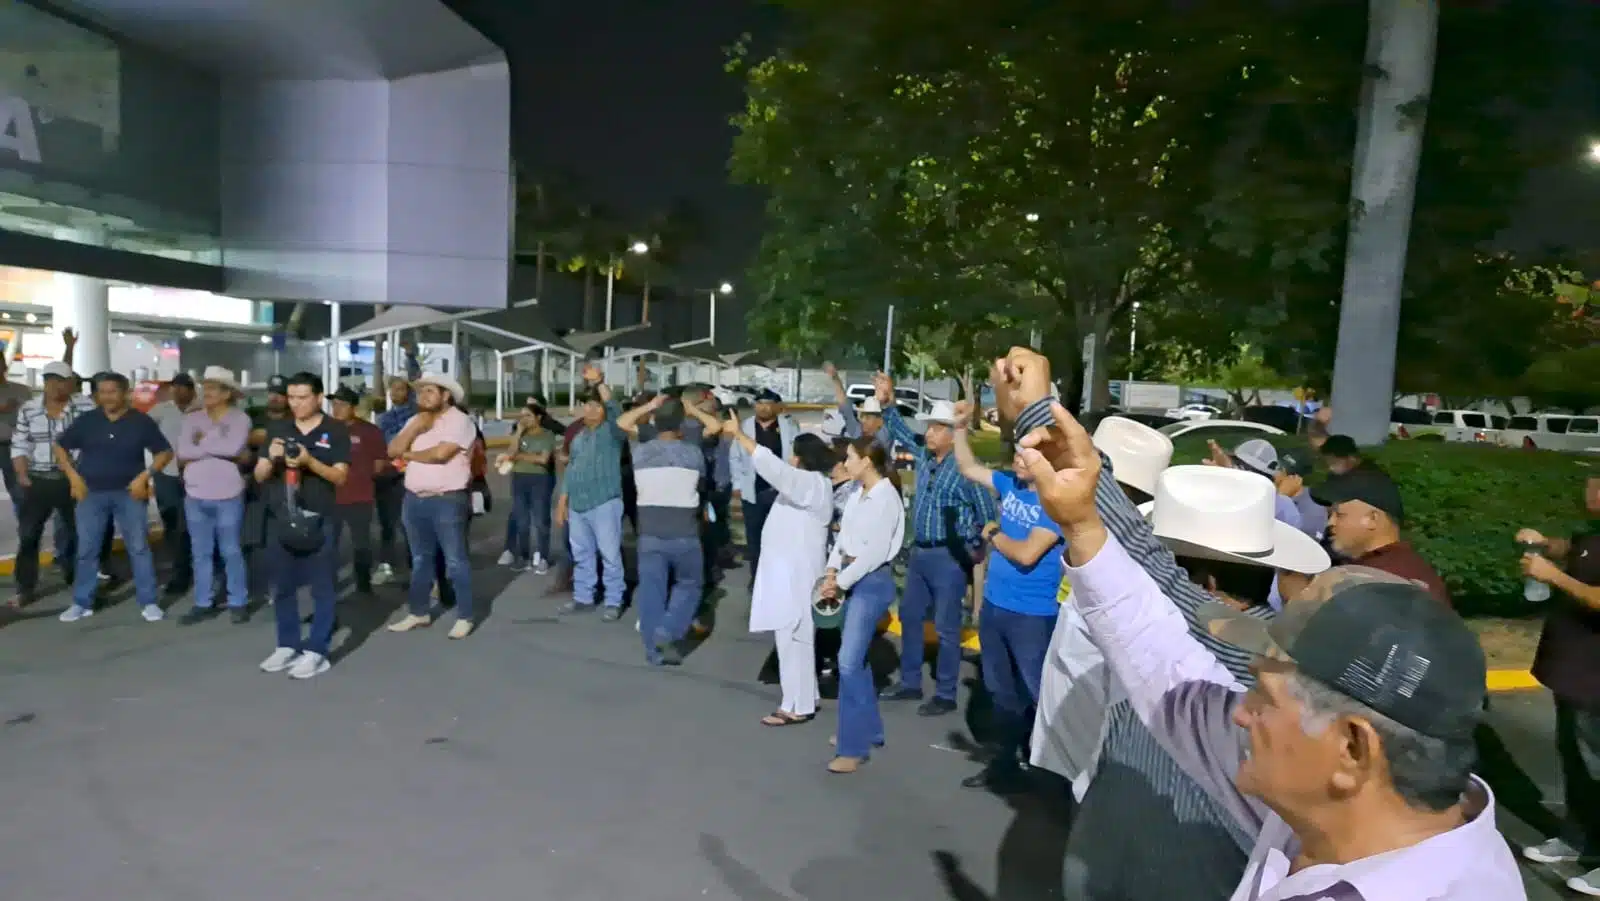 Productores cantan el Himno Nacional durante protesta en aeropuerto de Culiacán